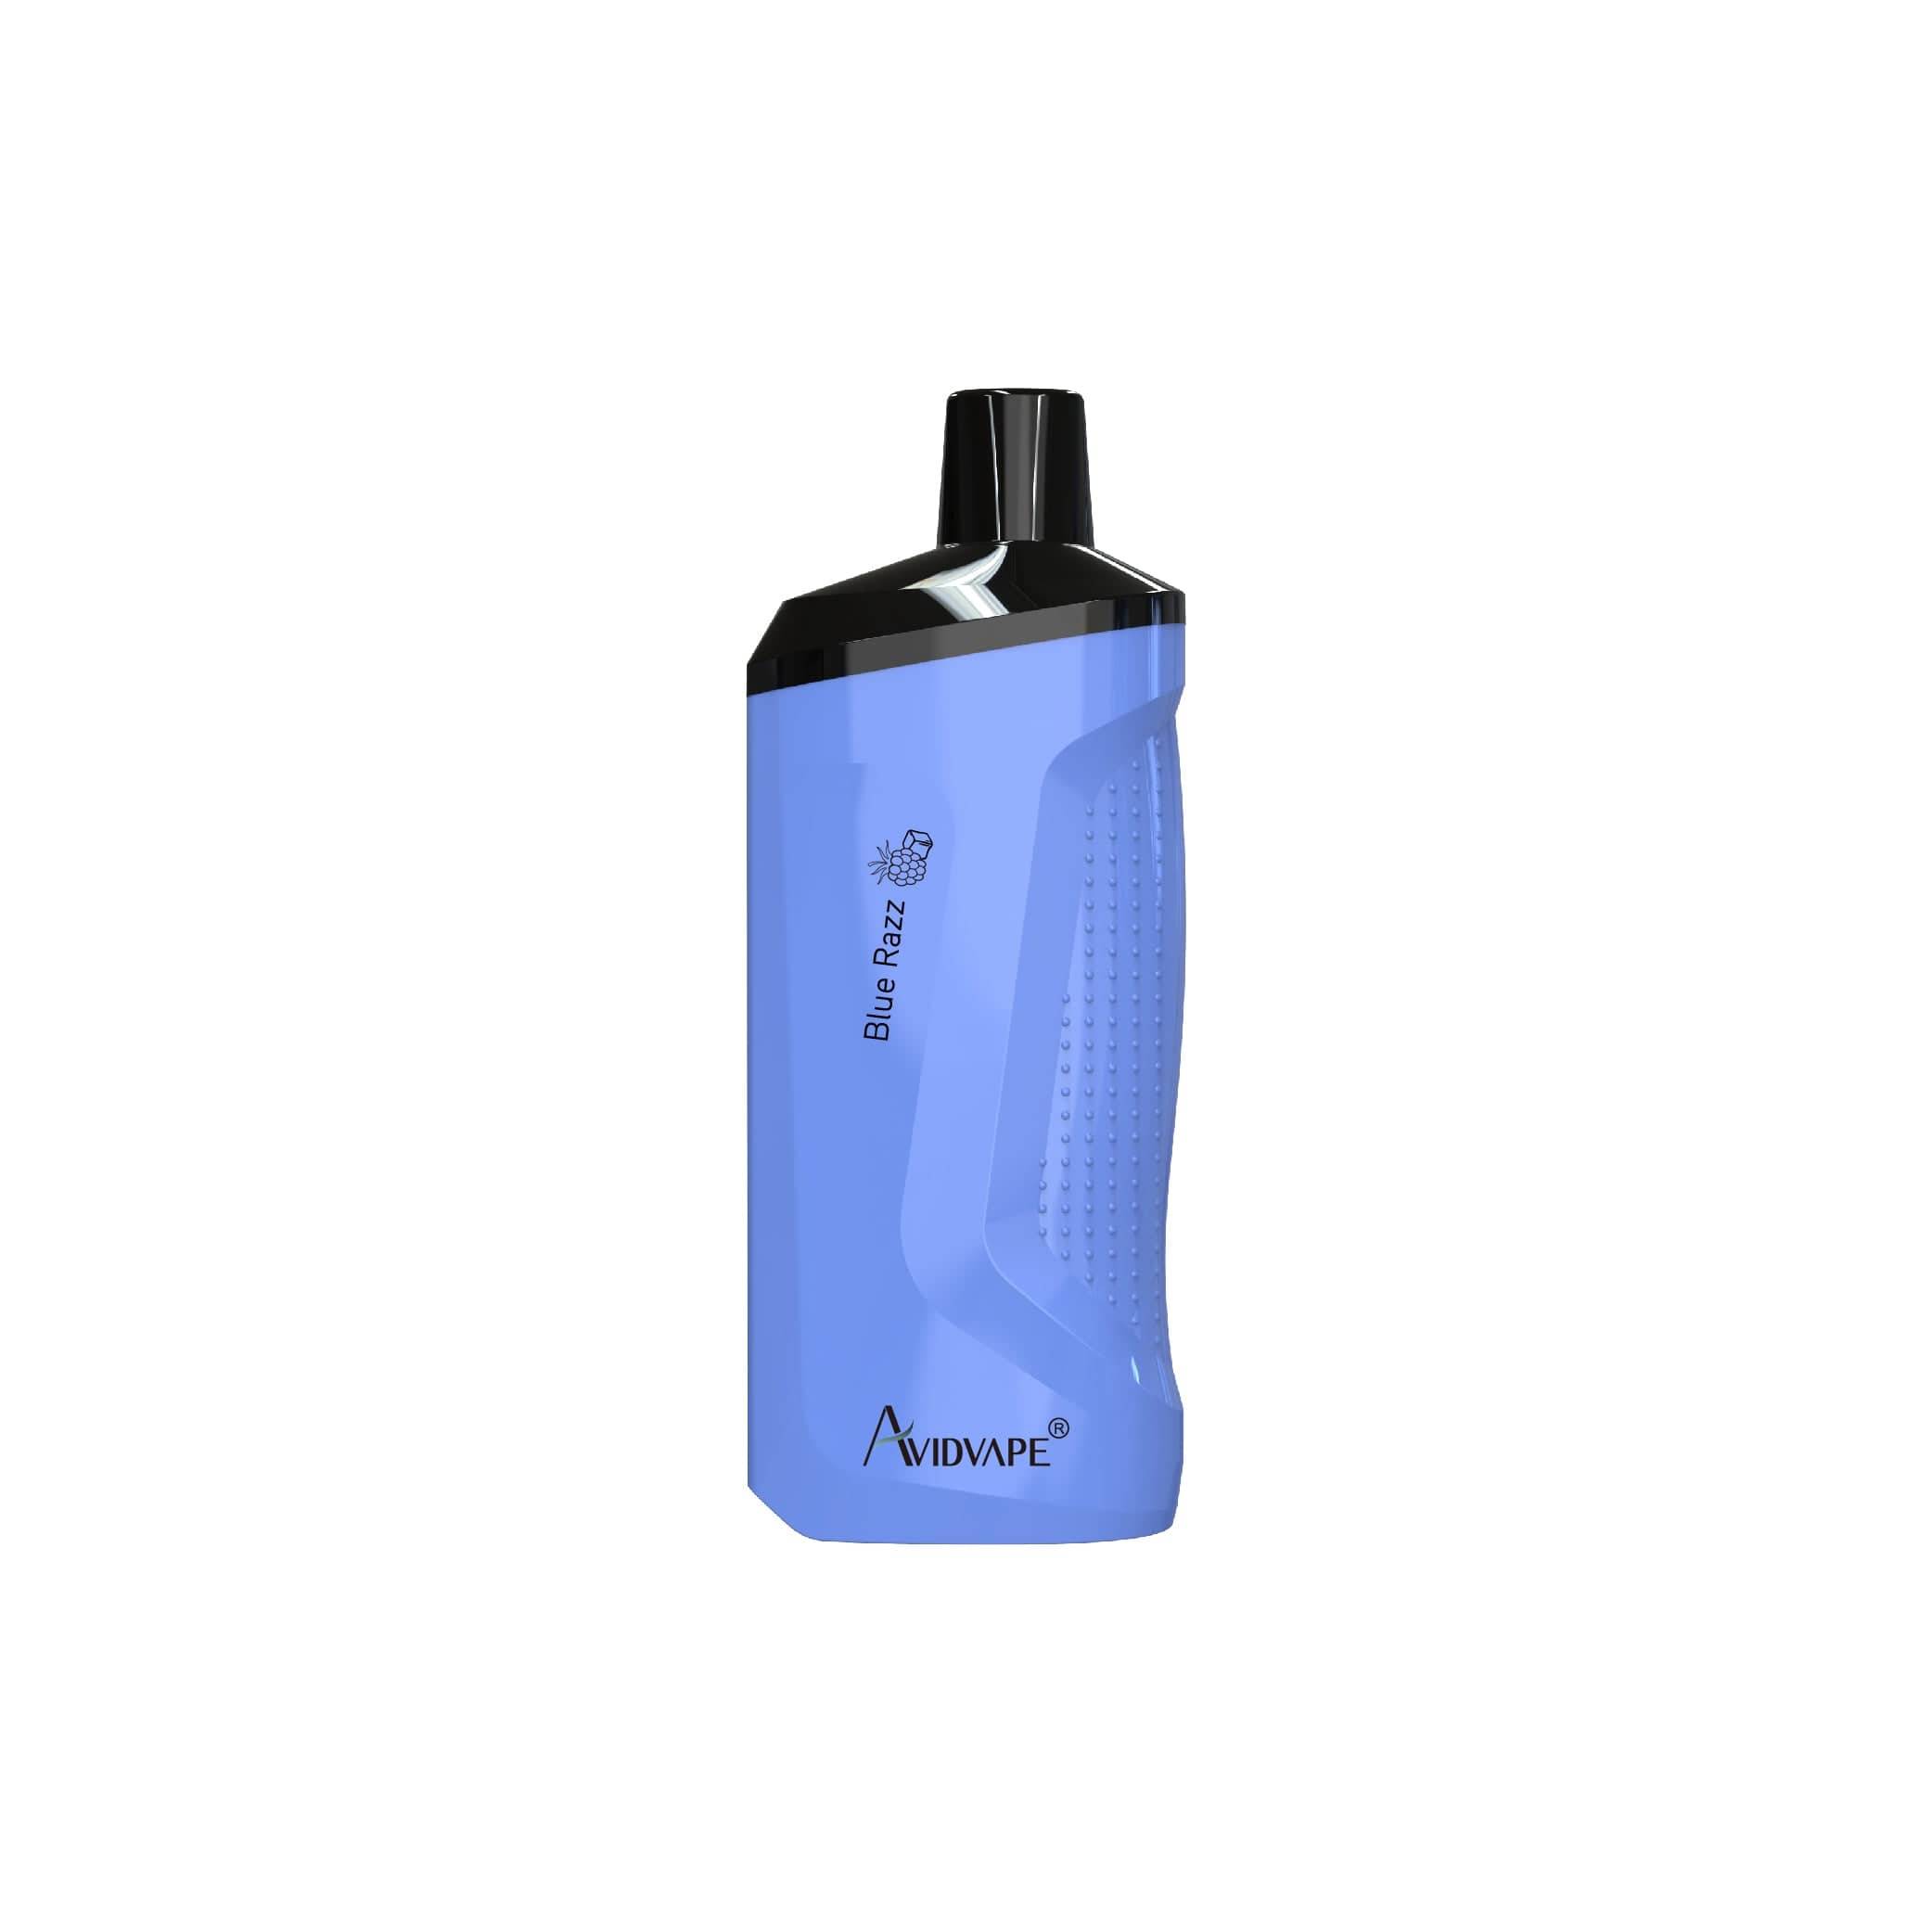 Avidvape Disposable Vape Blue Razz Avidvape Plump Disposable Vape (5%, 8000 Puffs)